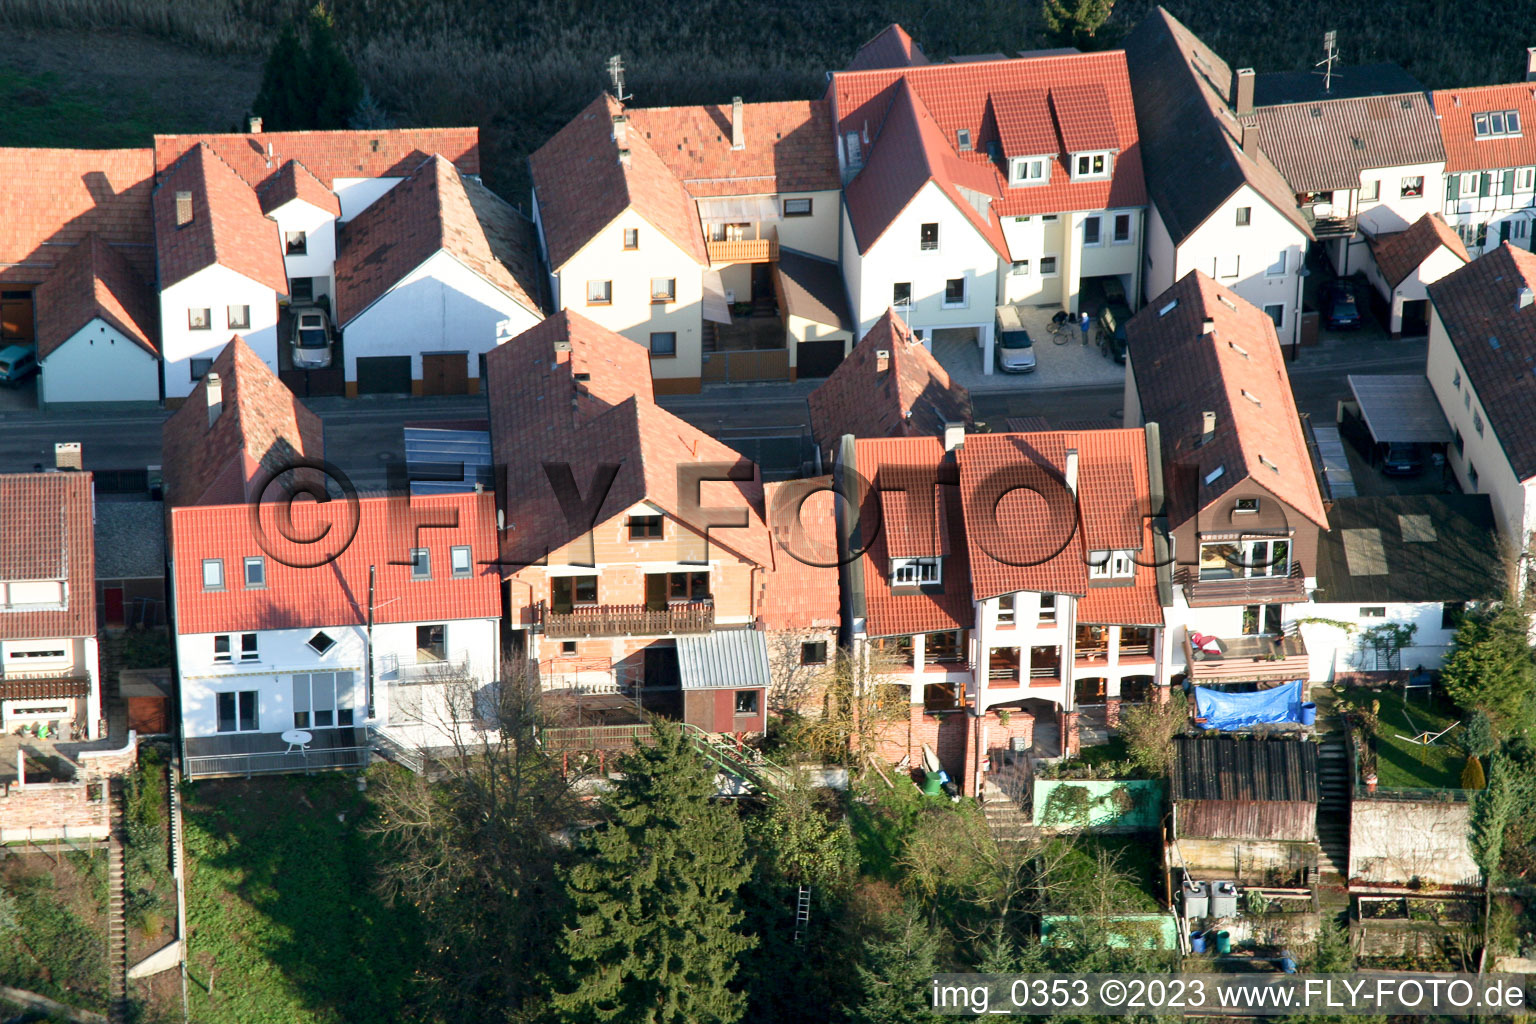 Ludwigstr. à Jockgrim dans le département Rhénanie-Palatinat, Allemagne vue d'en haut